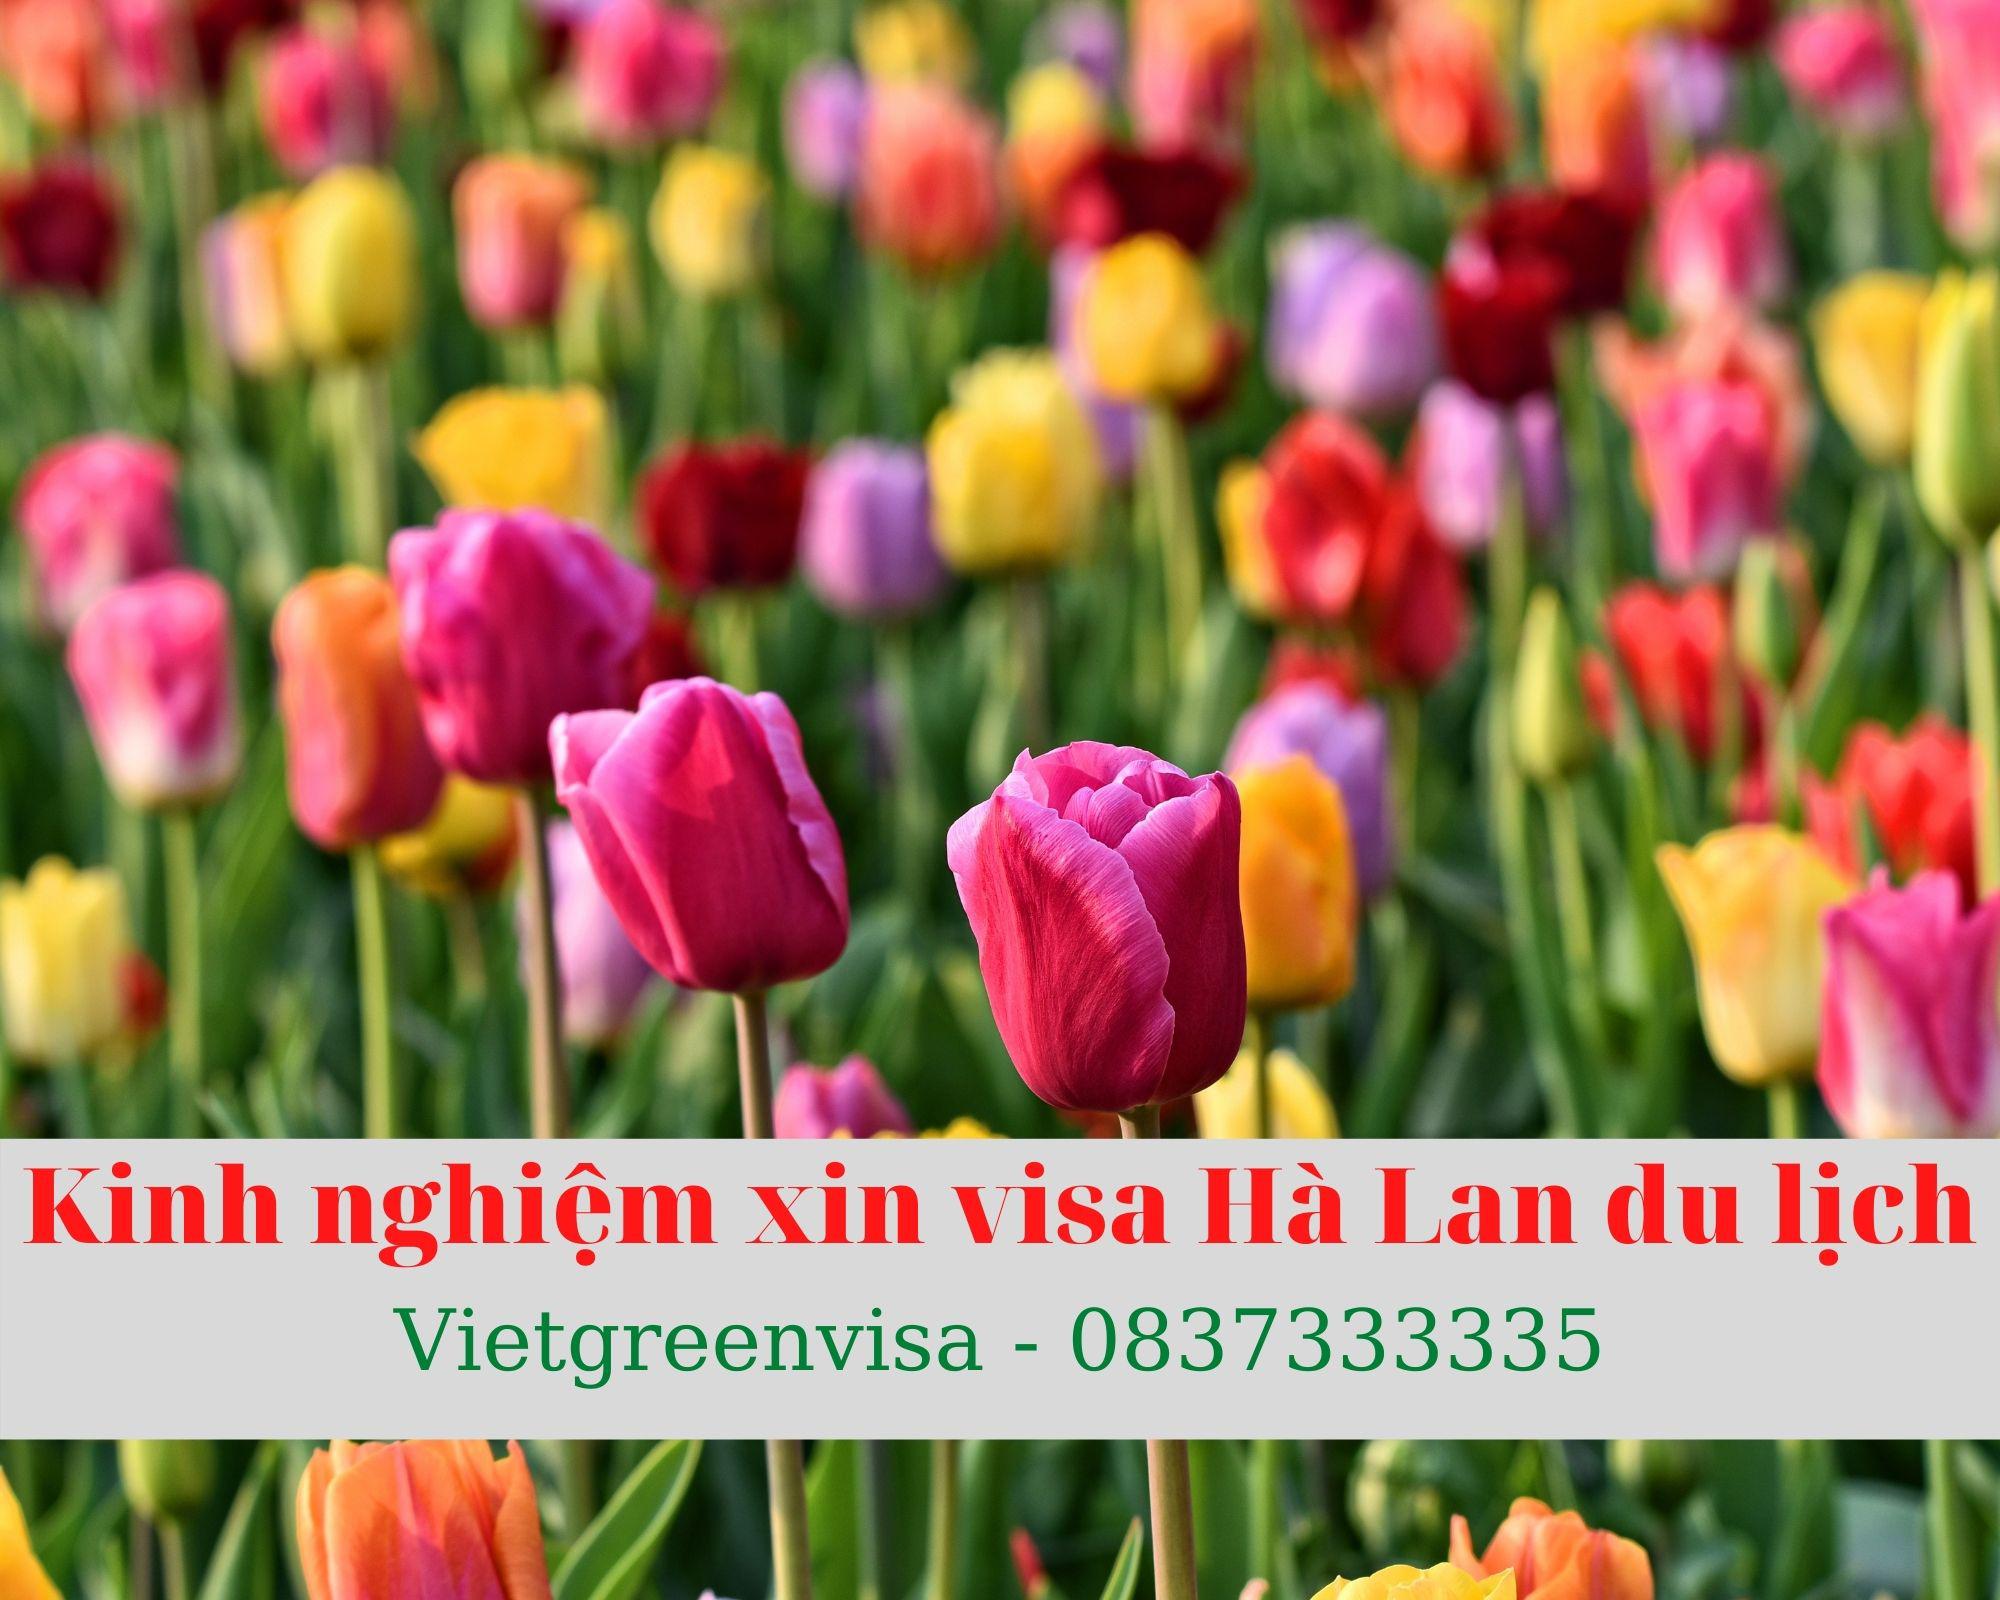 Hướng dẫn làm visa Hà Lan diện du lịch nhanh và dễ dàng